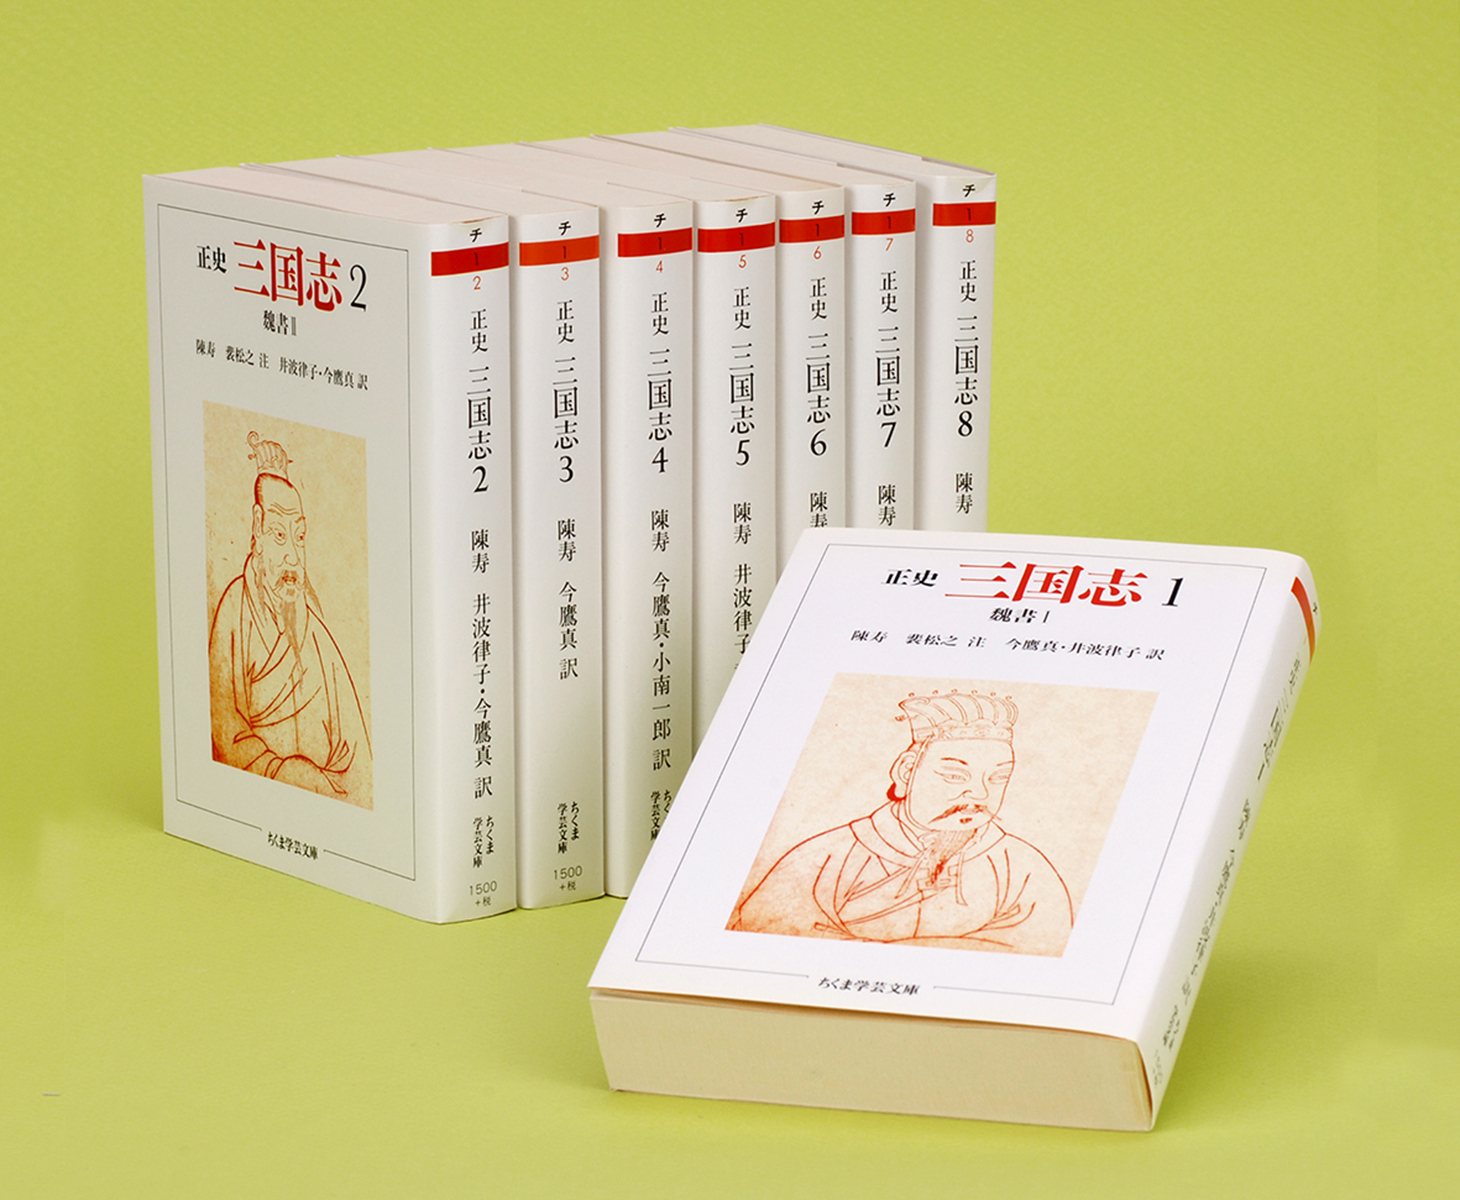 正史 三国志 全8巻セット（¥9,000） - 文芸